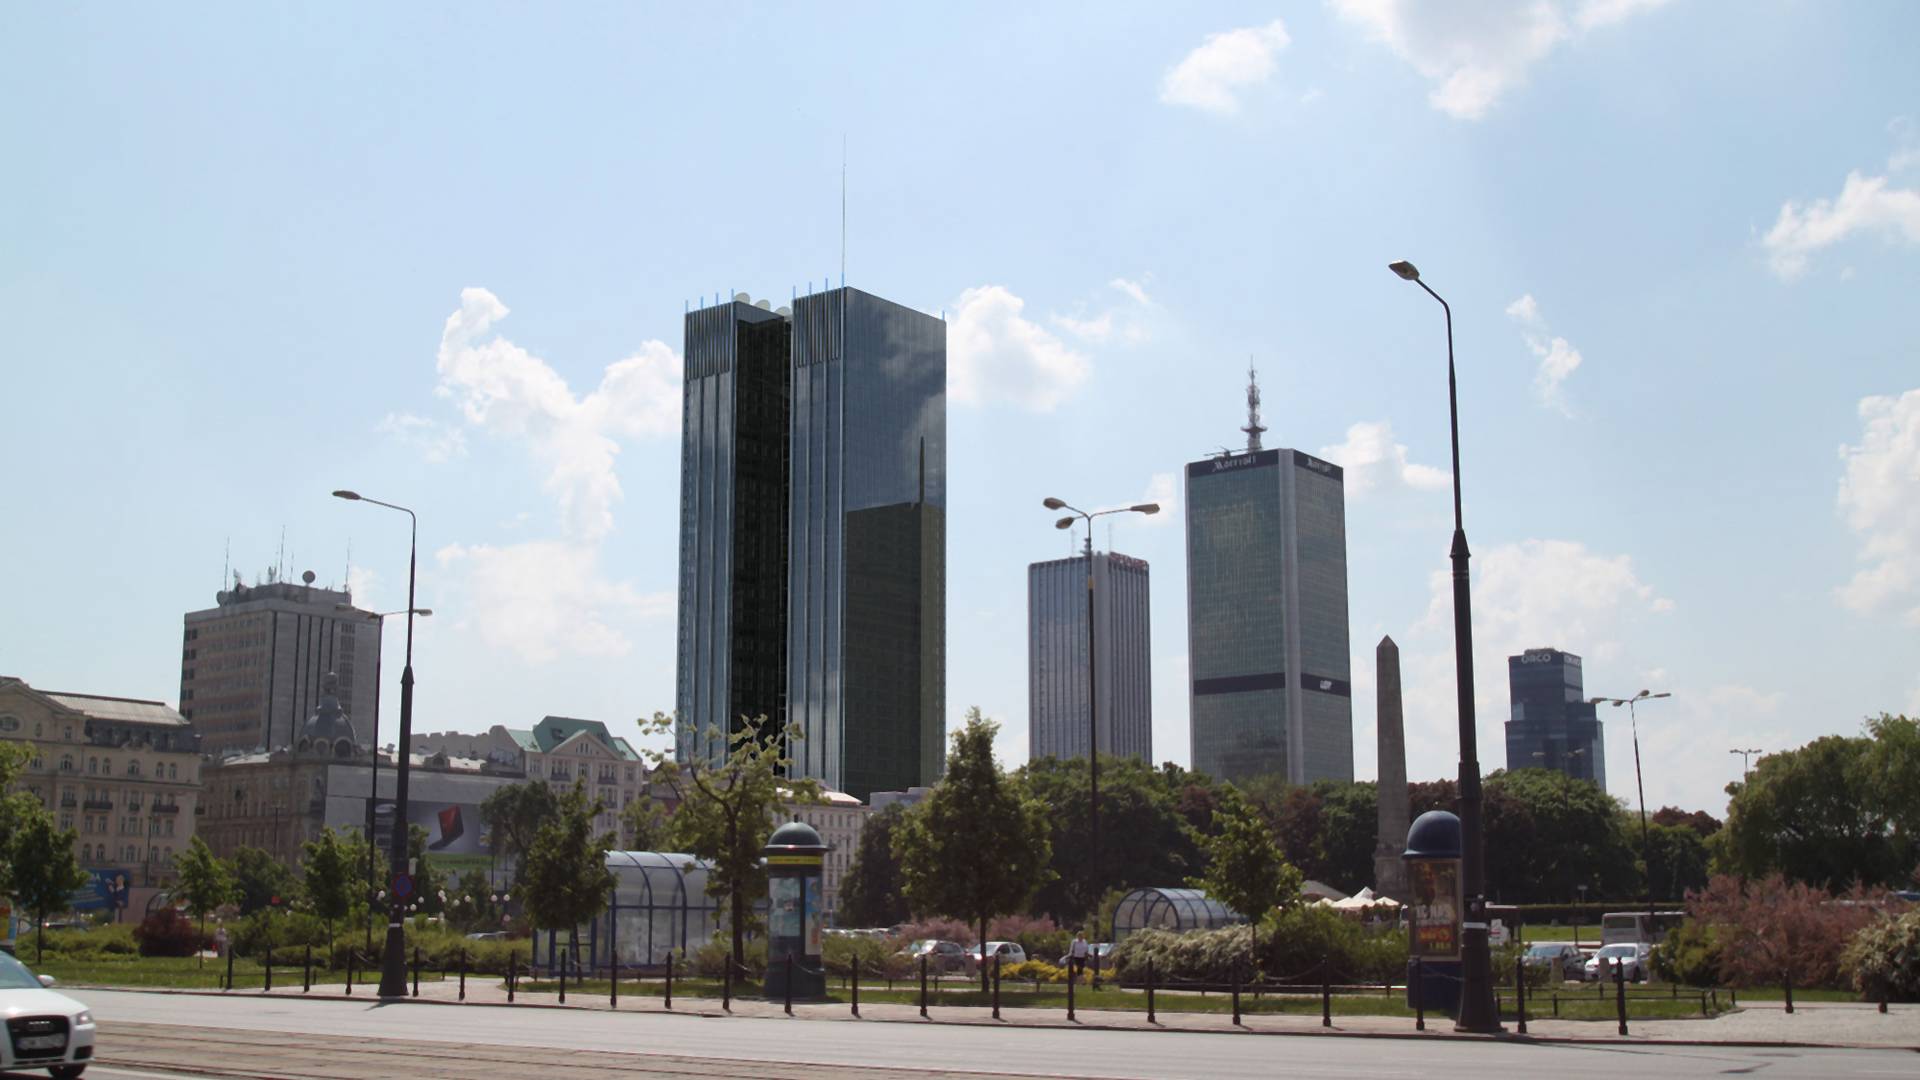 Kuria zbuduje 170-metrowy wieżowiec w centrum Warszawy. Papież wyraził zgodę